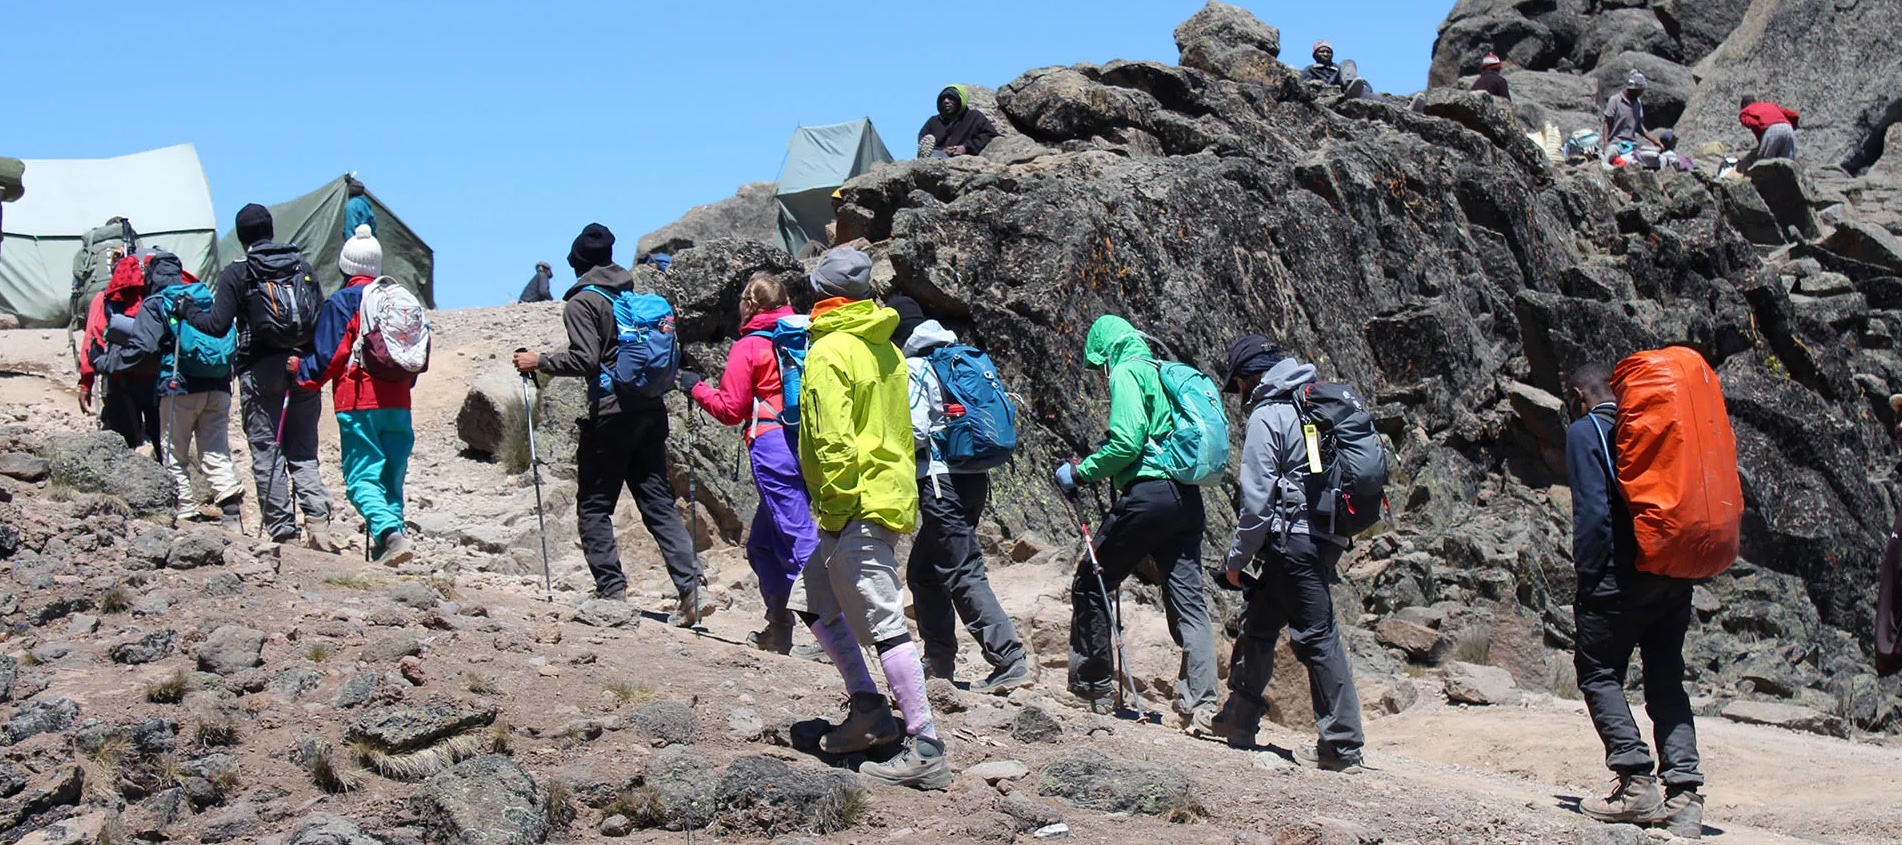 Mount Kilimanjaro Climbing Routes